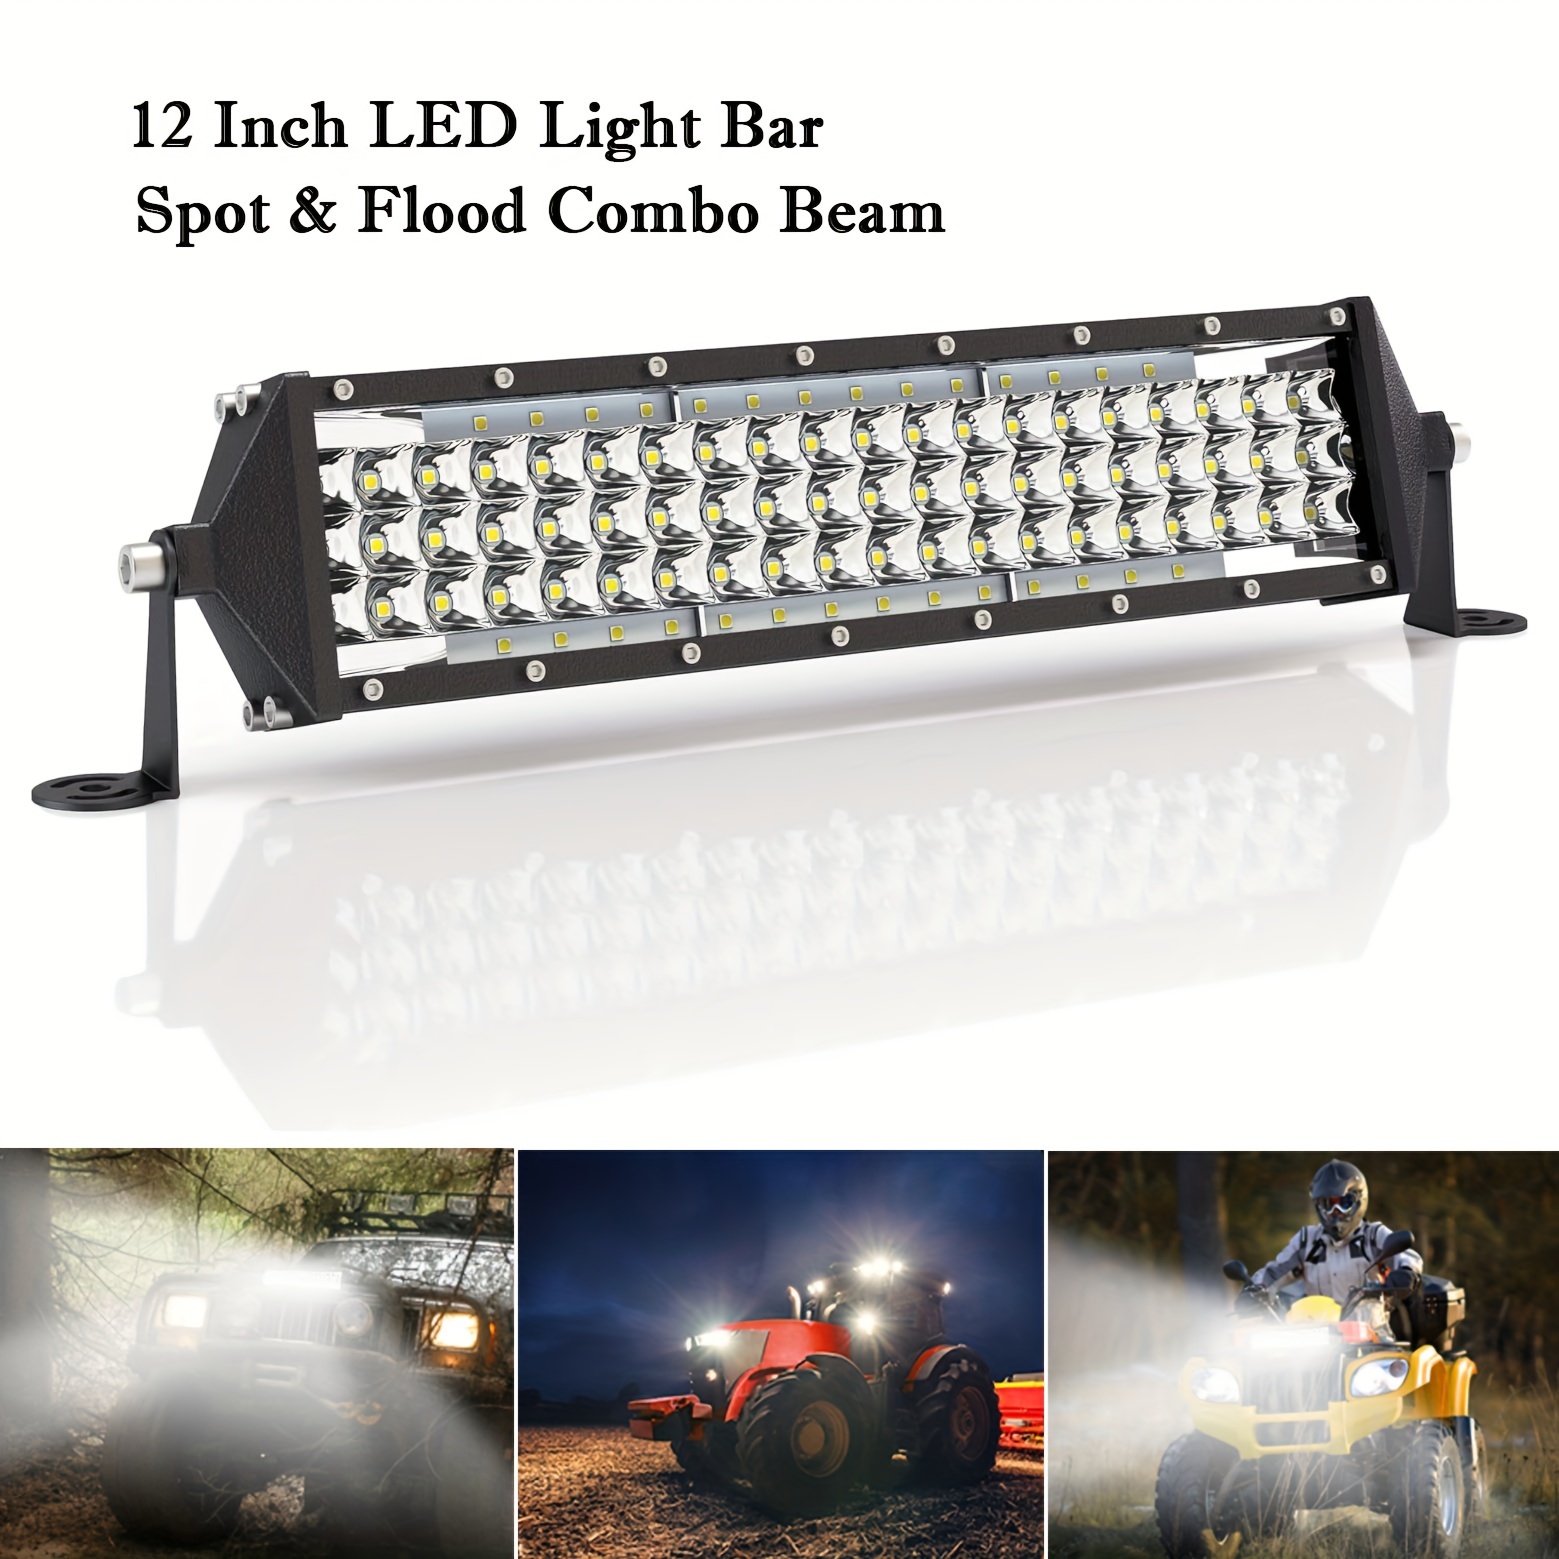 Barra led 22 pulgadas combo juego barras de luz LED para camioneta  todoterreno